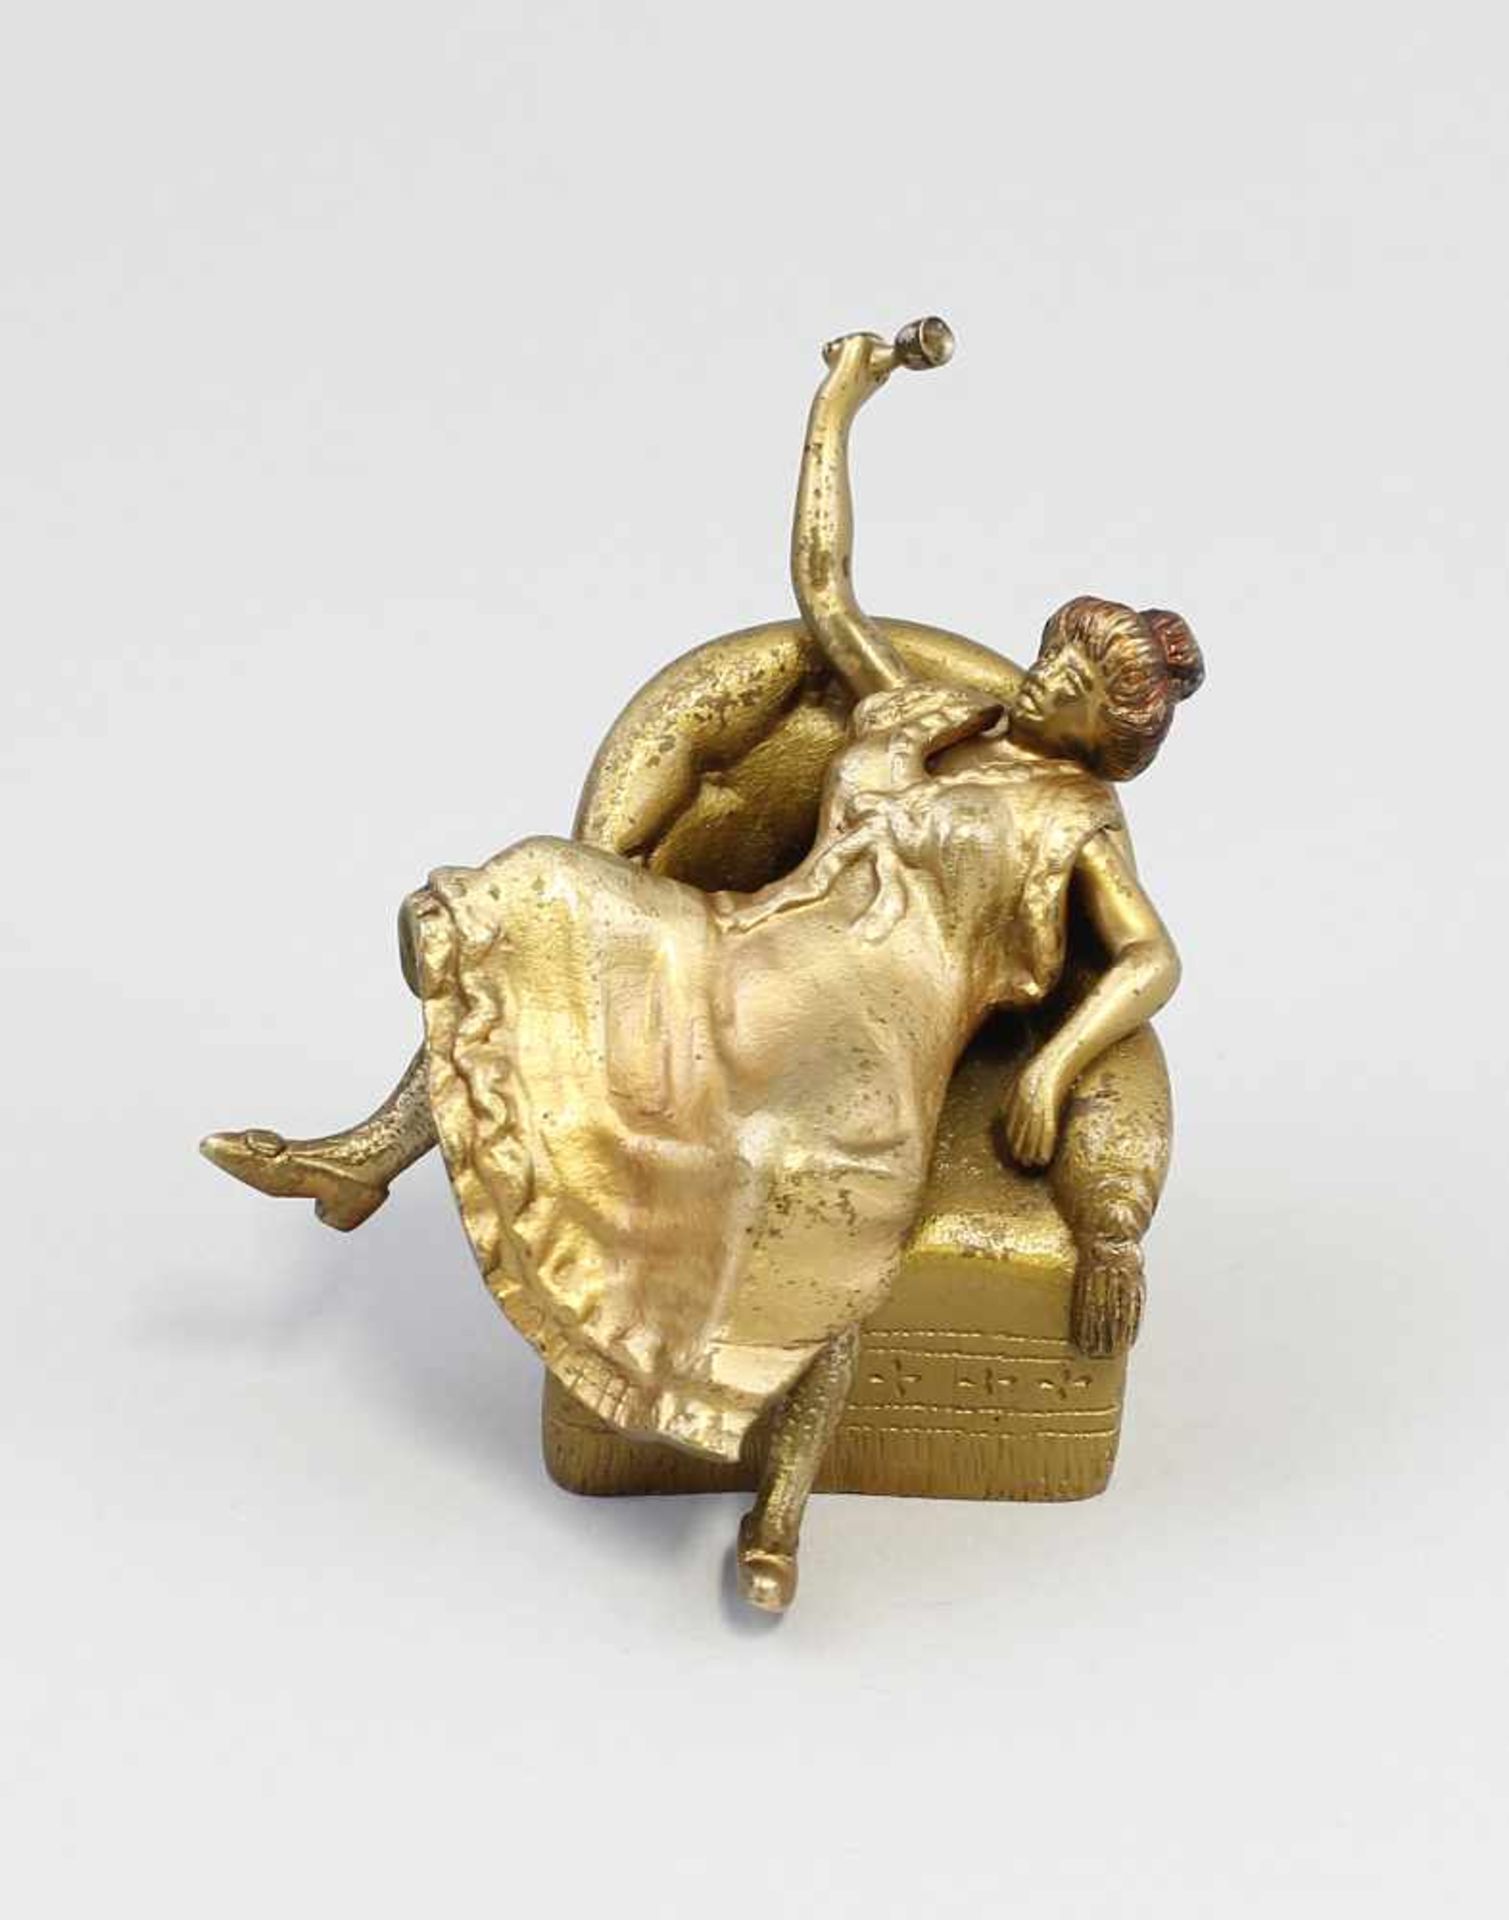 Erotische Kleinbronze Bronze, goldfarben und partiell rötlich gefasst, in lasziver Pose über der